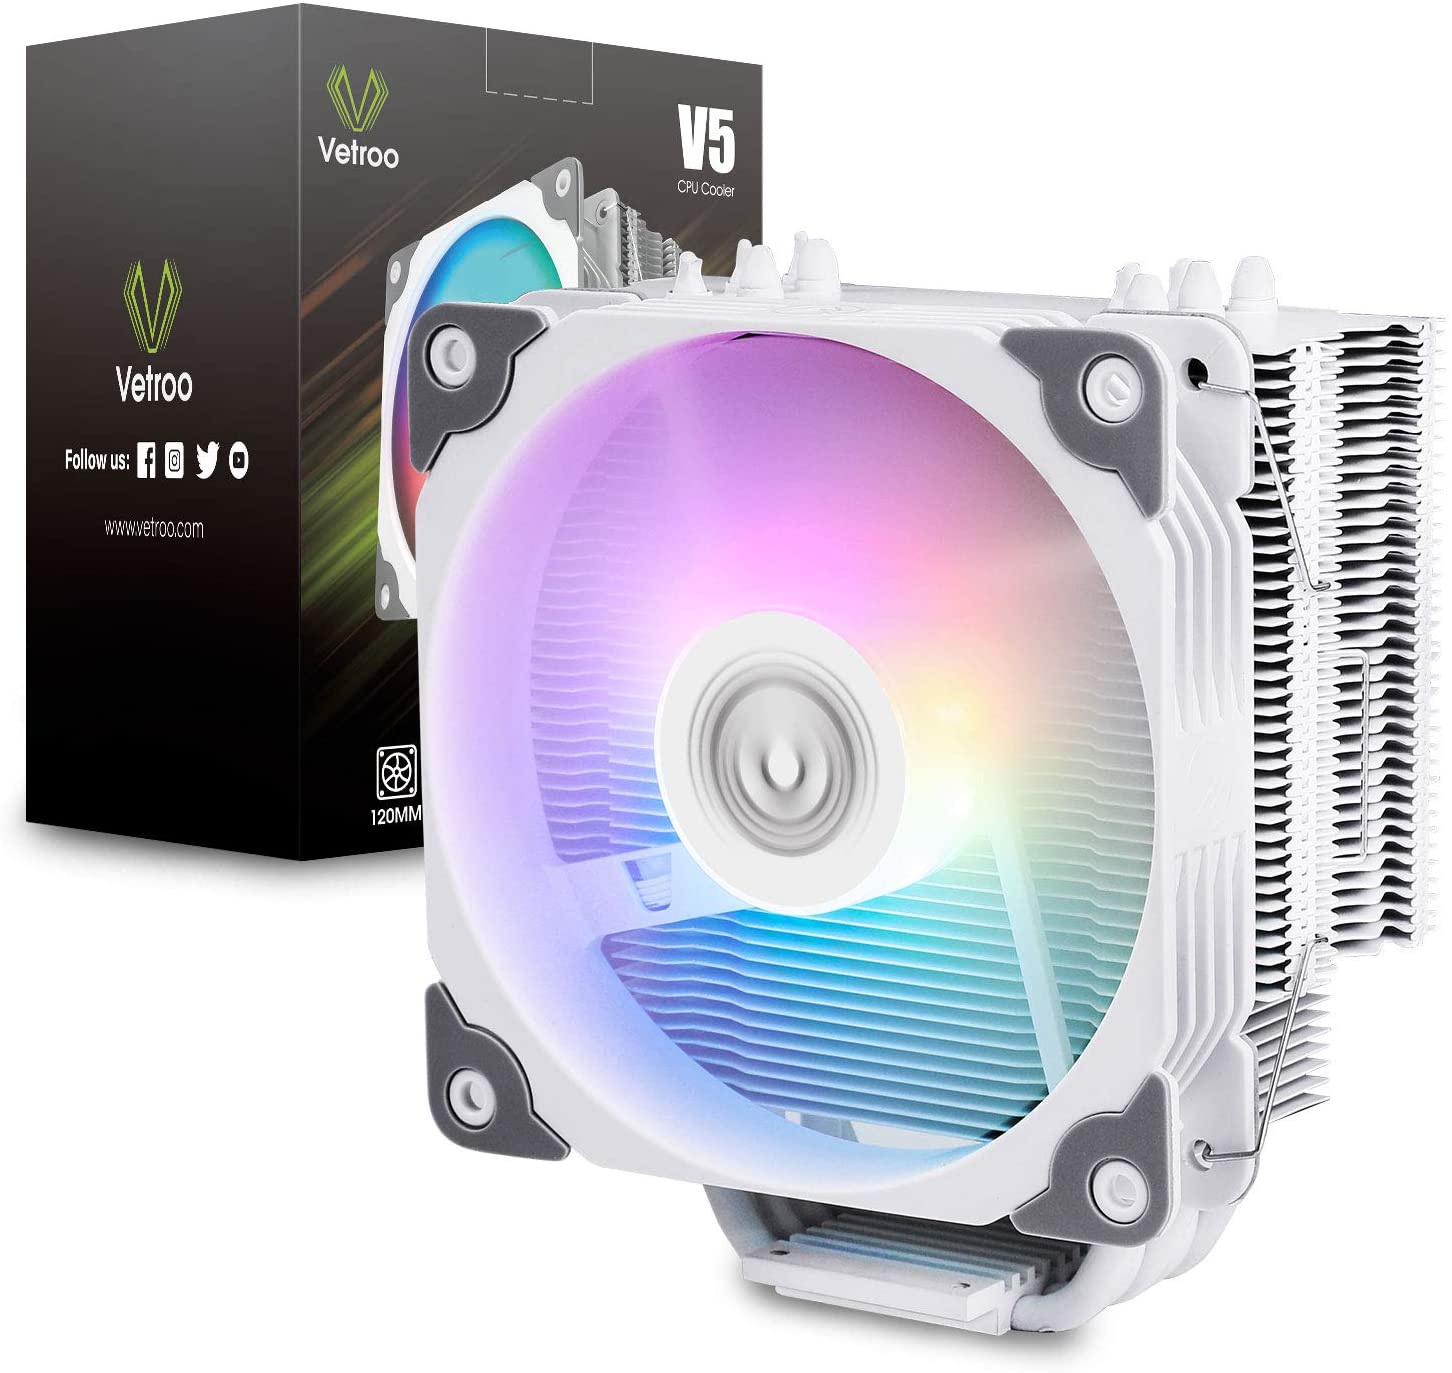 Vetroo V5 White CPU Air Cooler - Lightning Deal $24